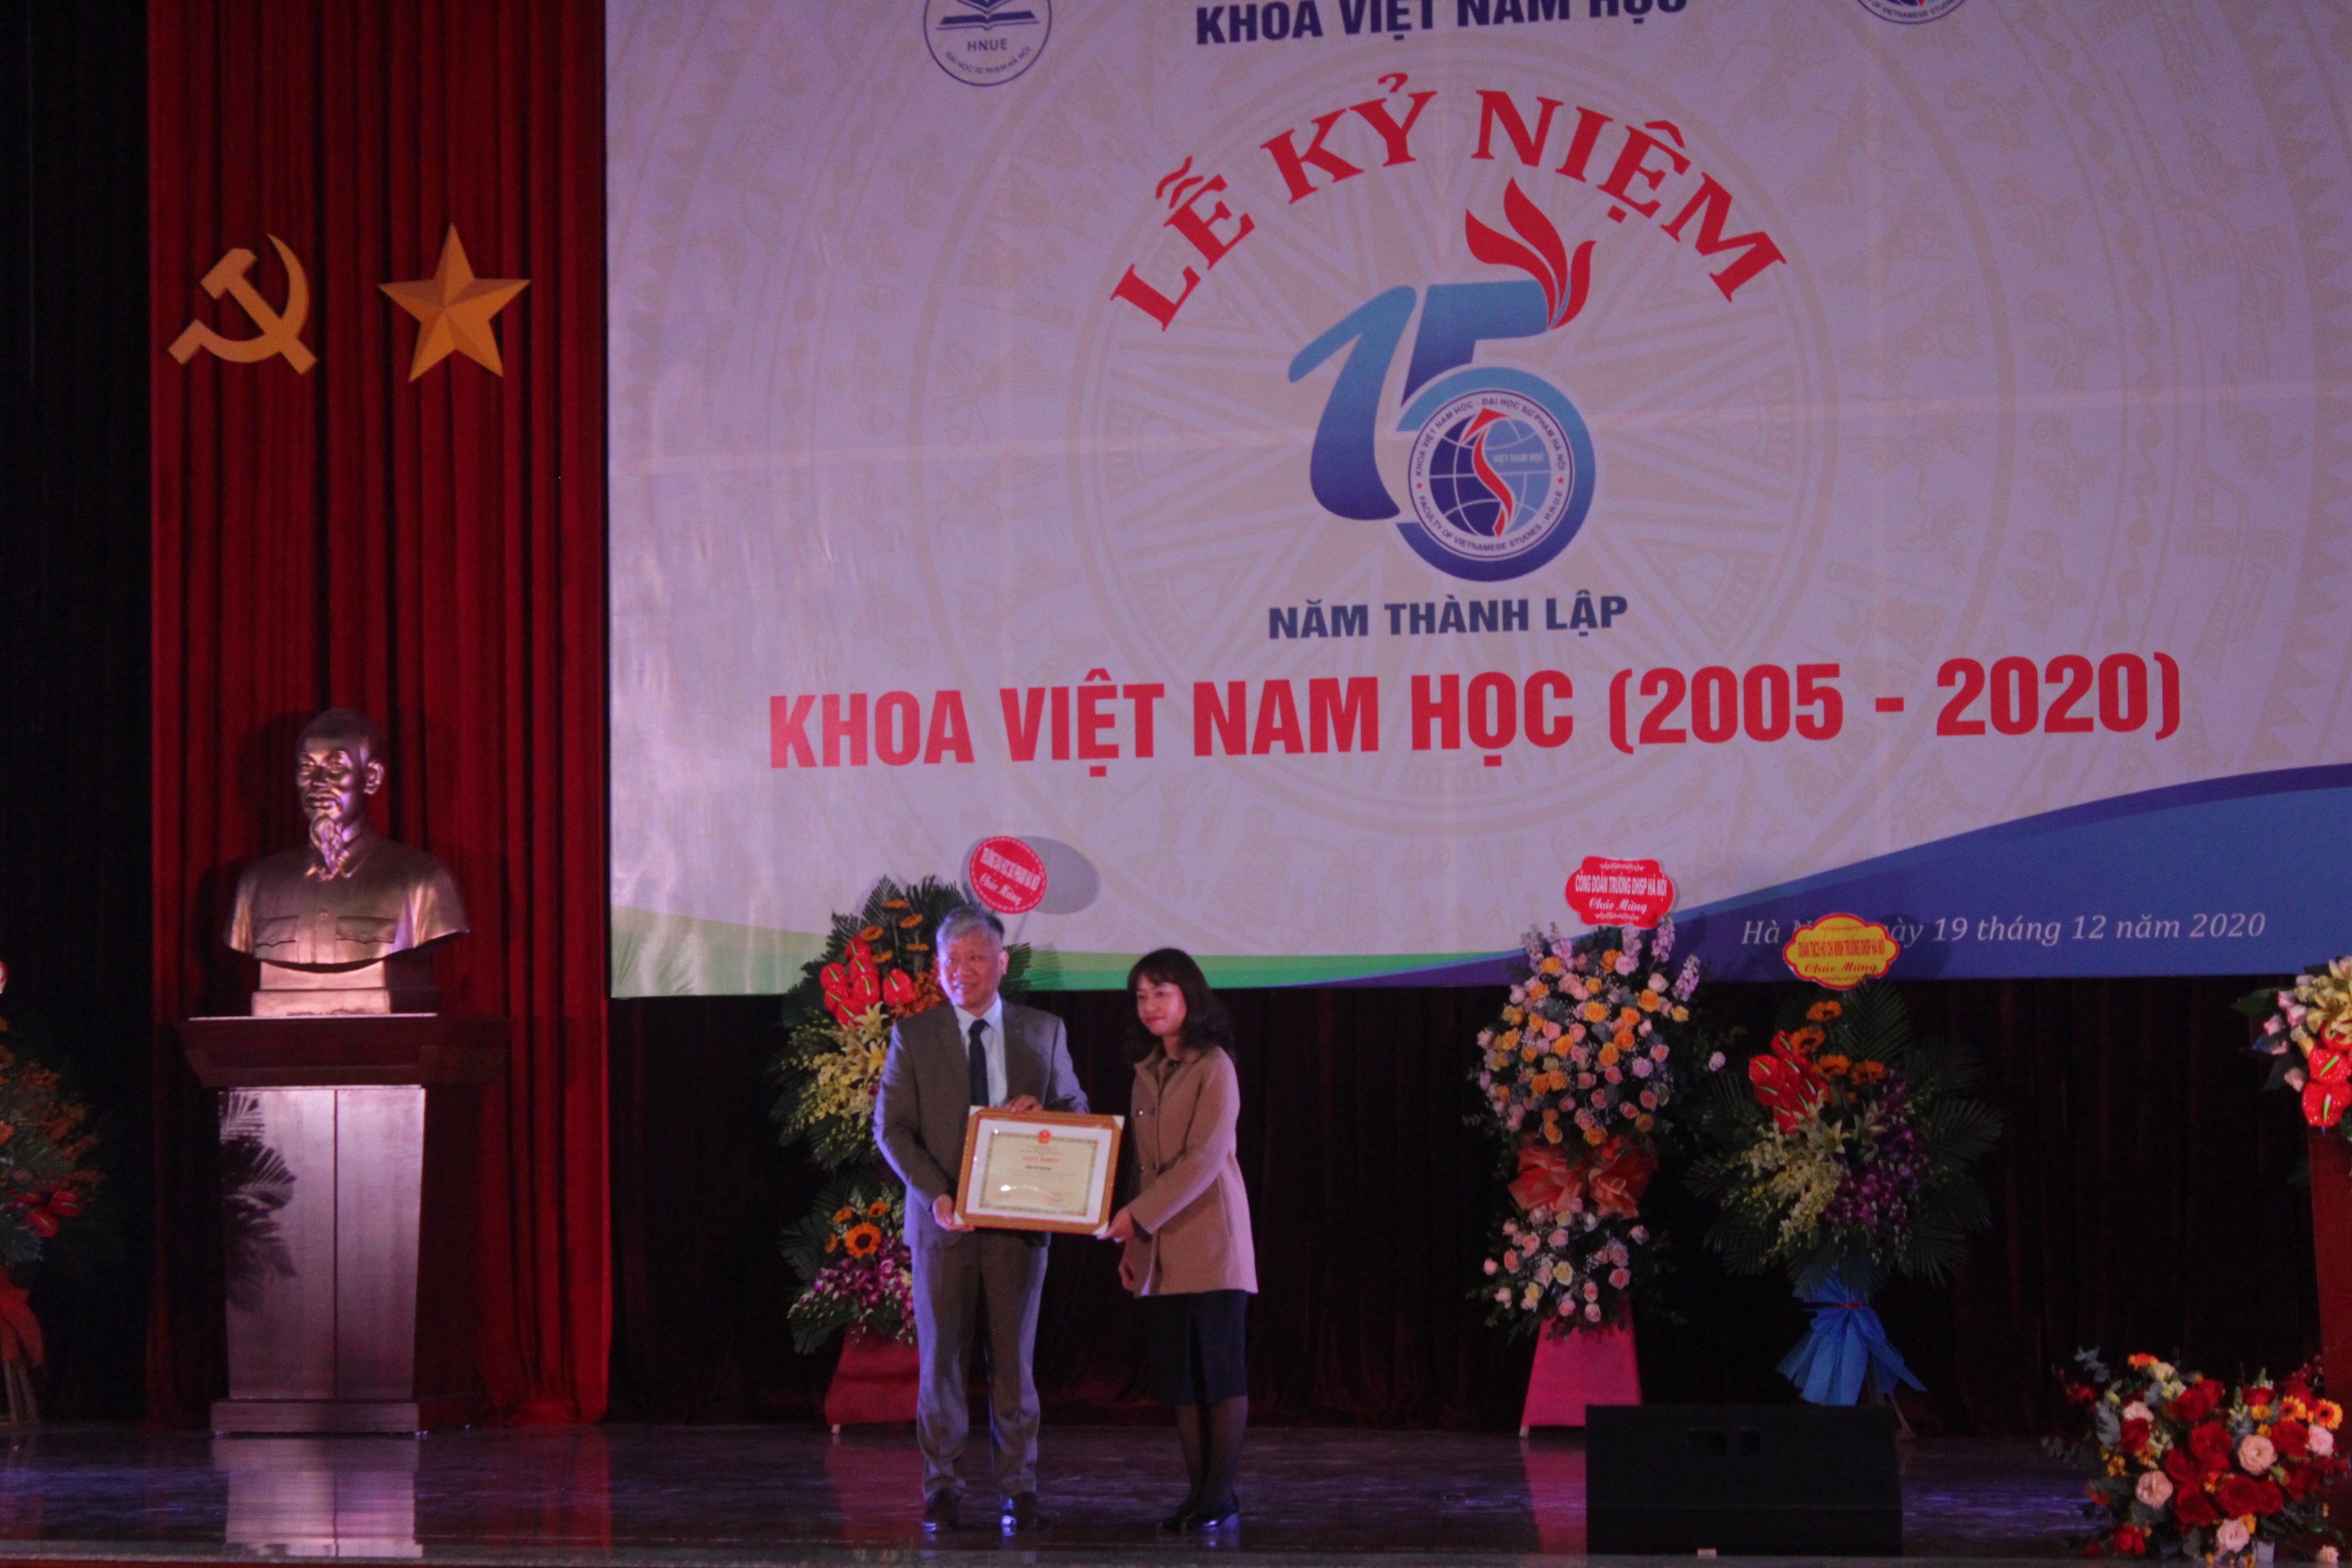 Đại diện Ban giám hiệu nhà trường trao Bằng khen cho Khoa Viêt Nam học